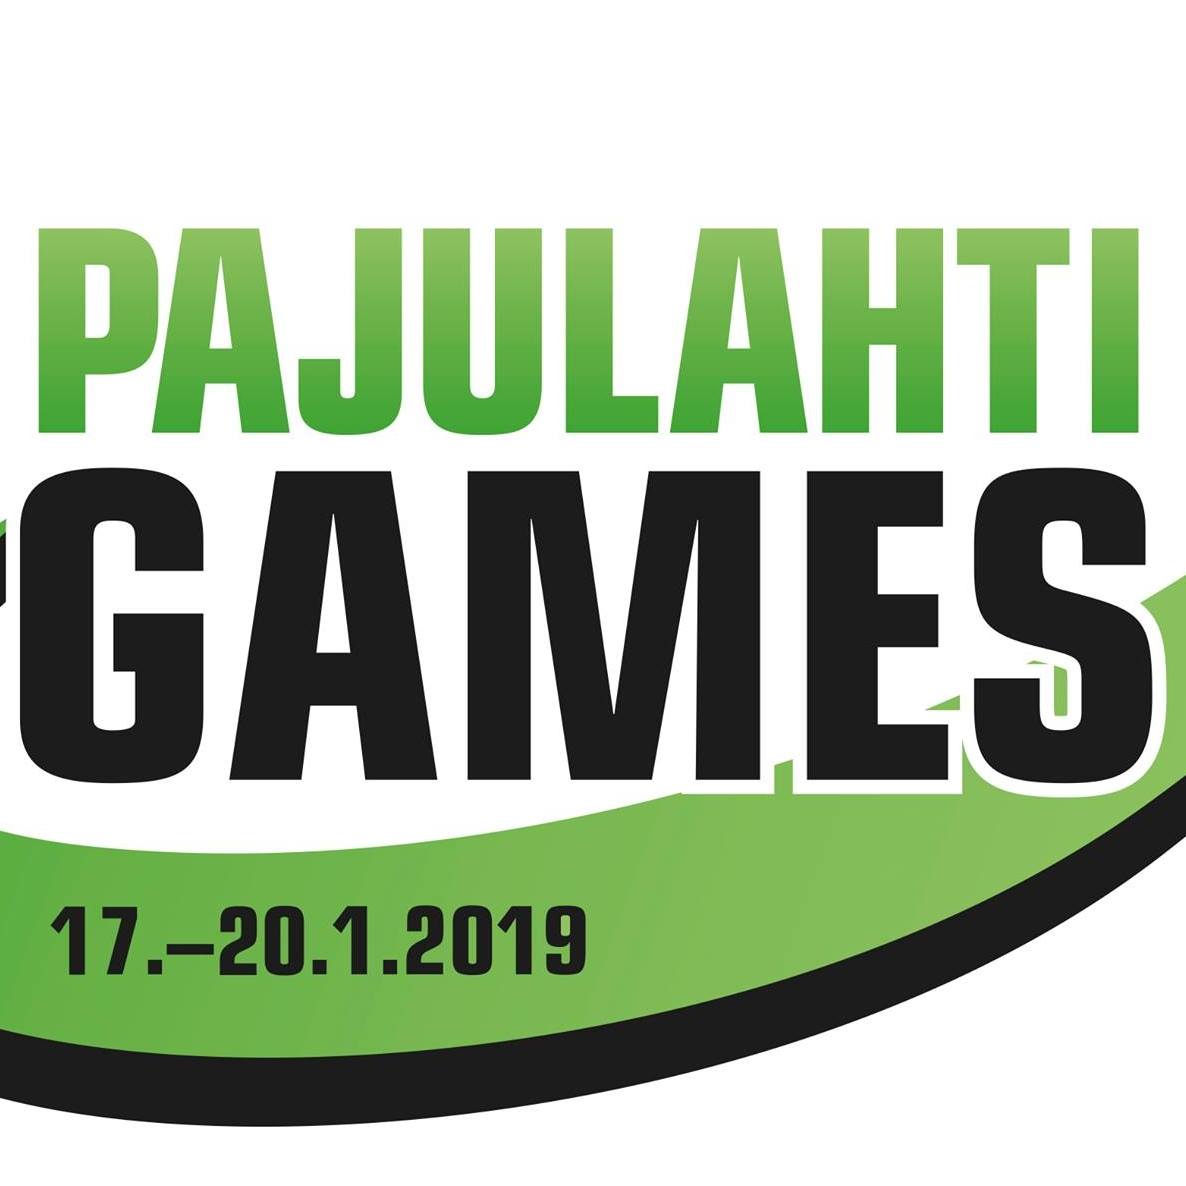 Российские женские команды по волейболу сидя и голболу стали чемпионками традиционных соревнований Pajulahti Games в Финляндии